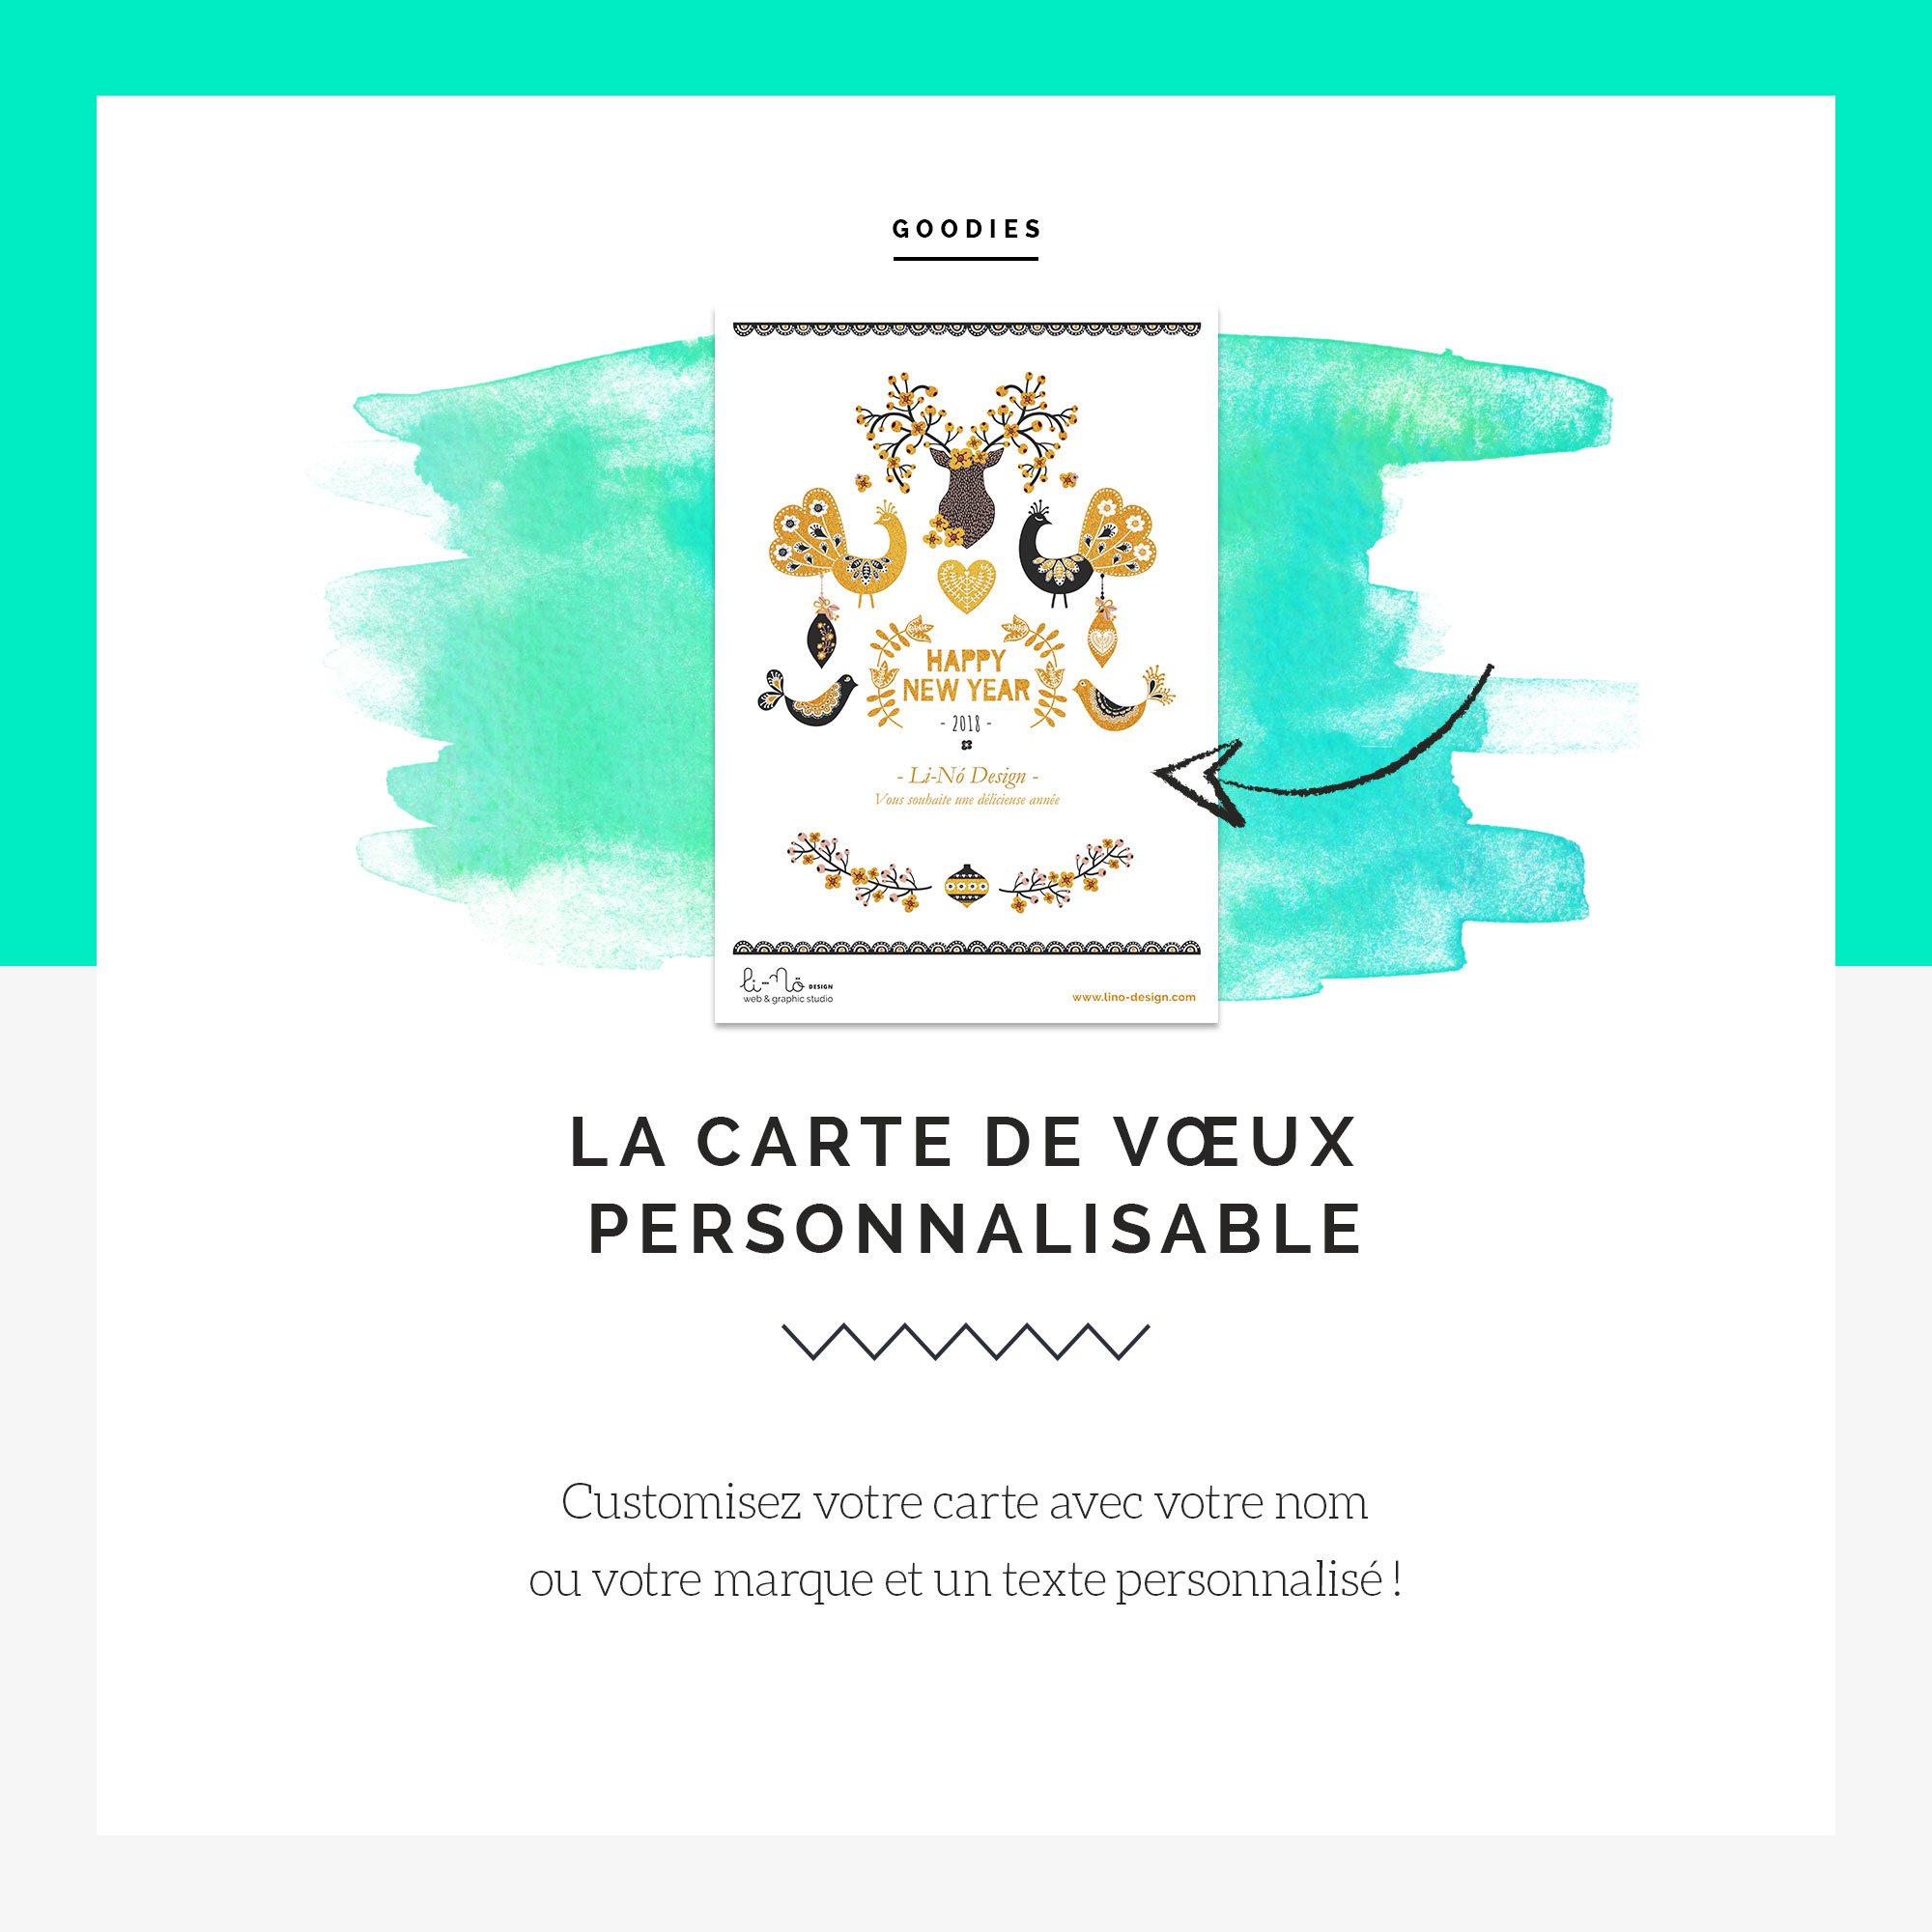 Votre carte de vœux personnalisable ! - Blog Li-Nó Design